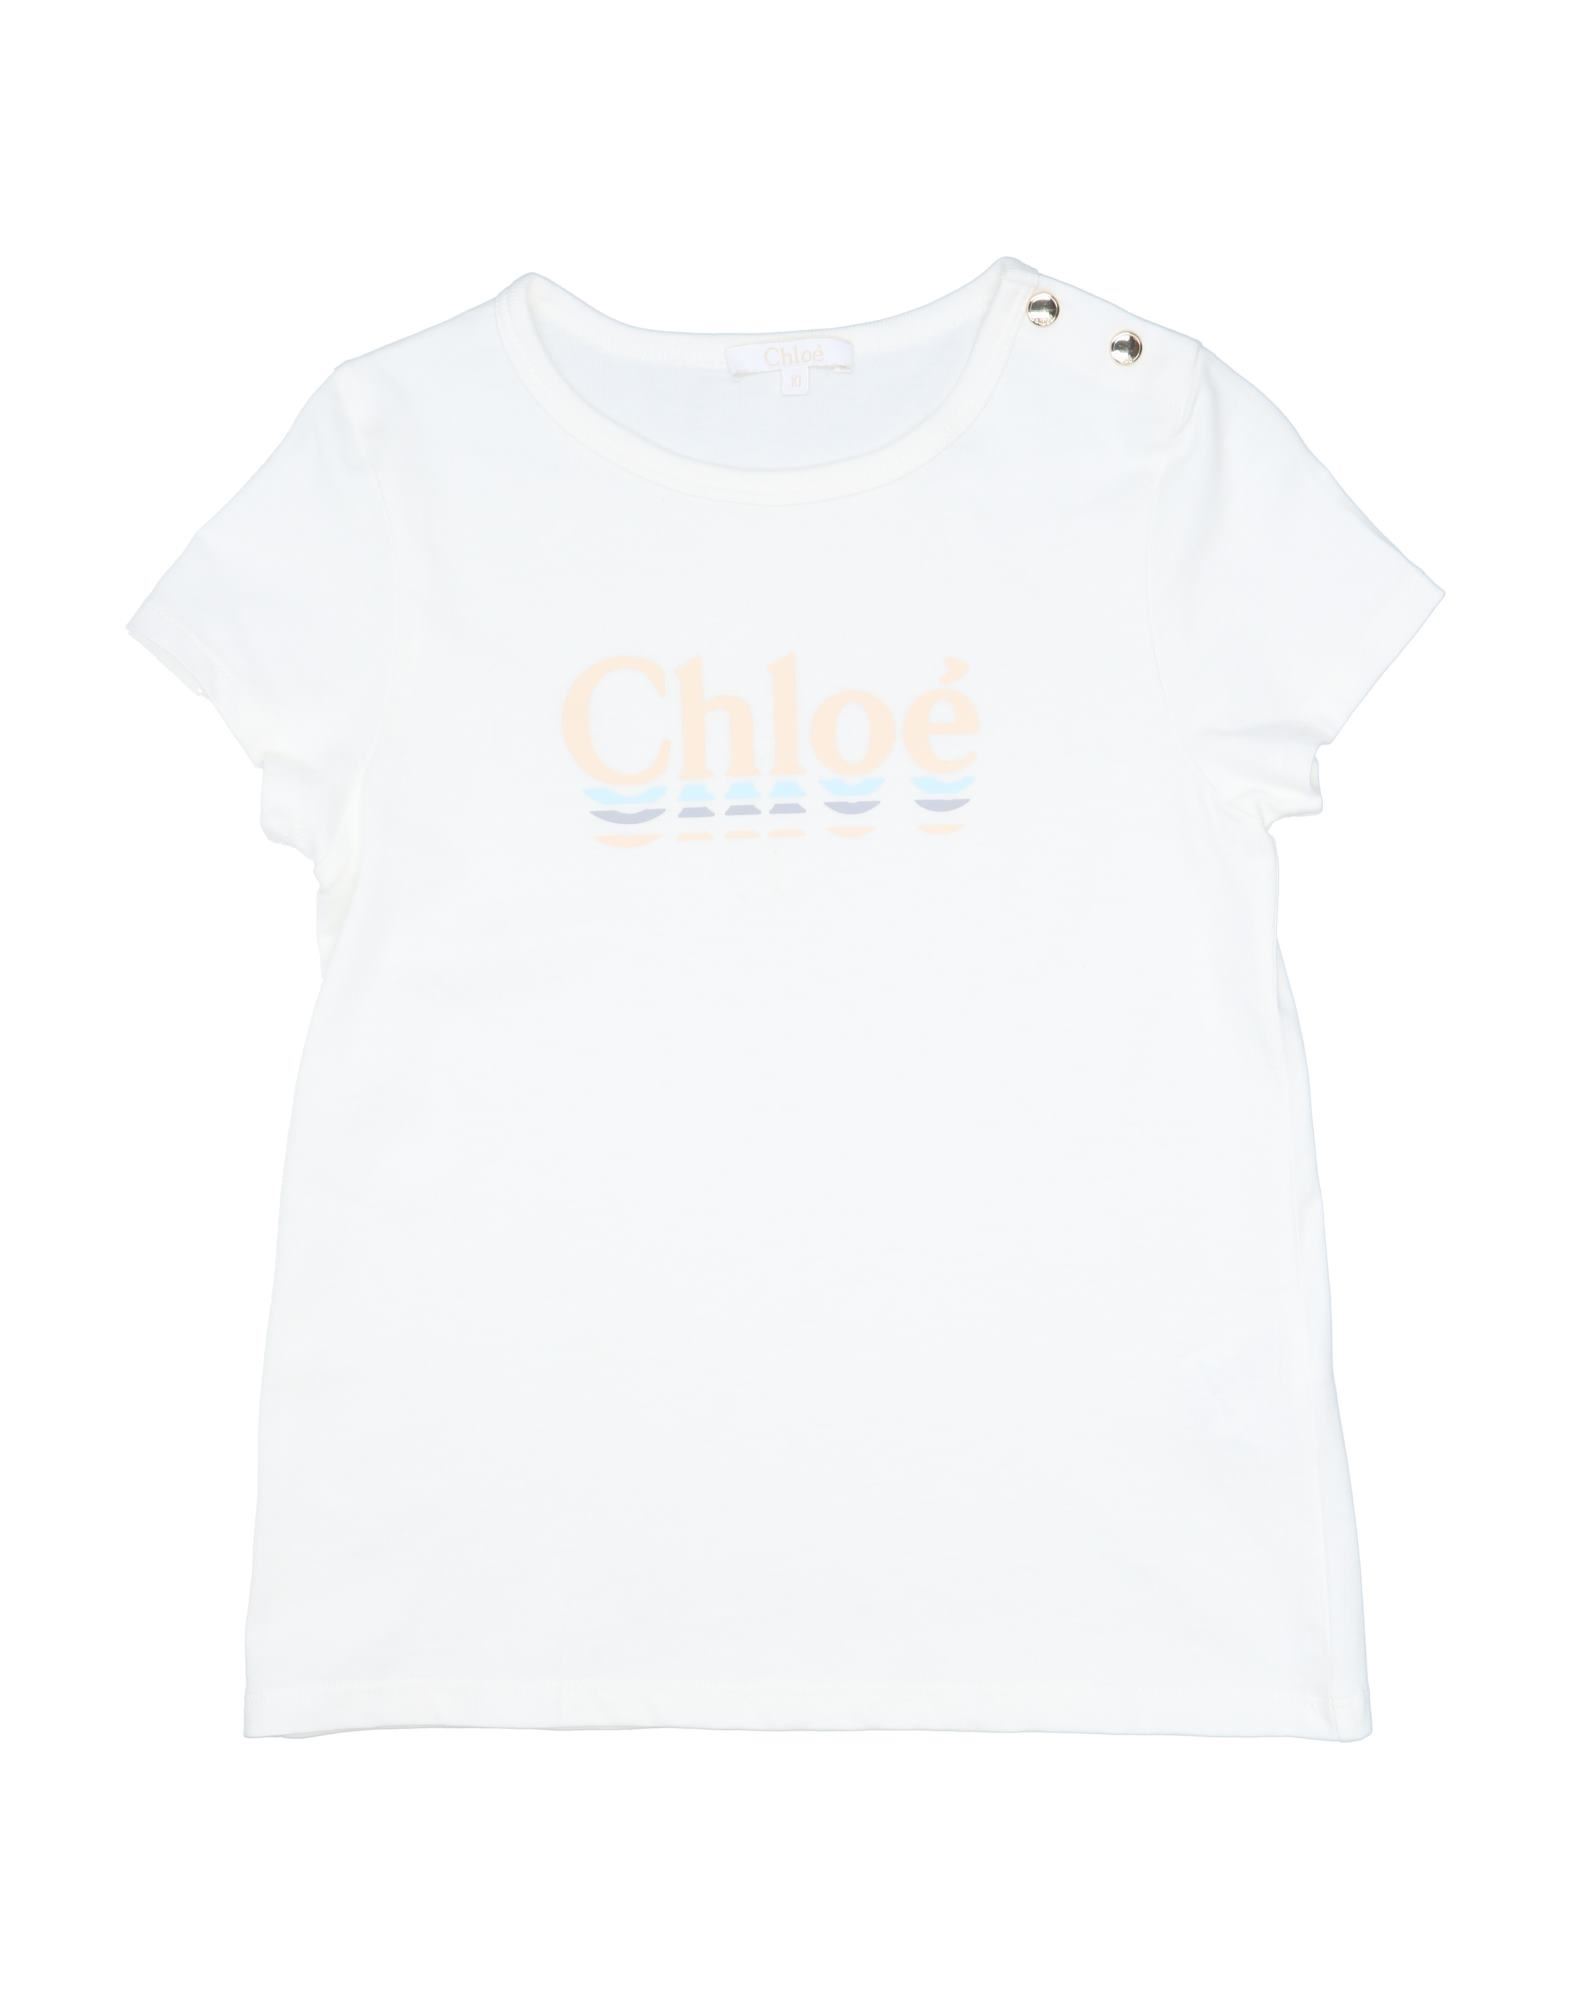 CHLOÉ T-shirts - Item 12535283